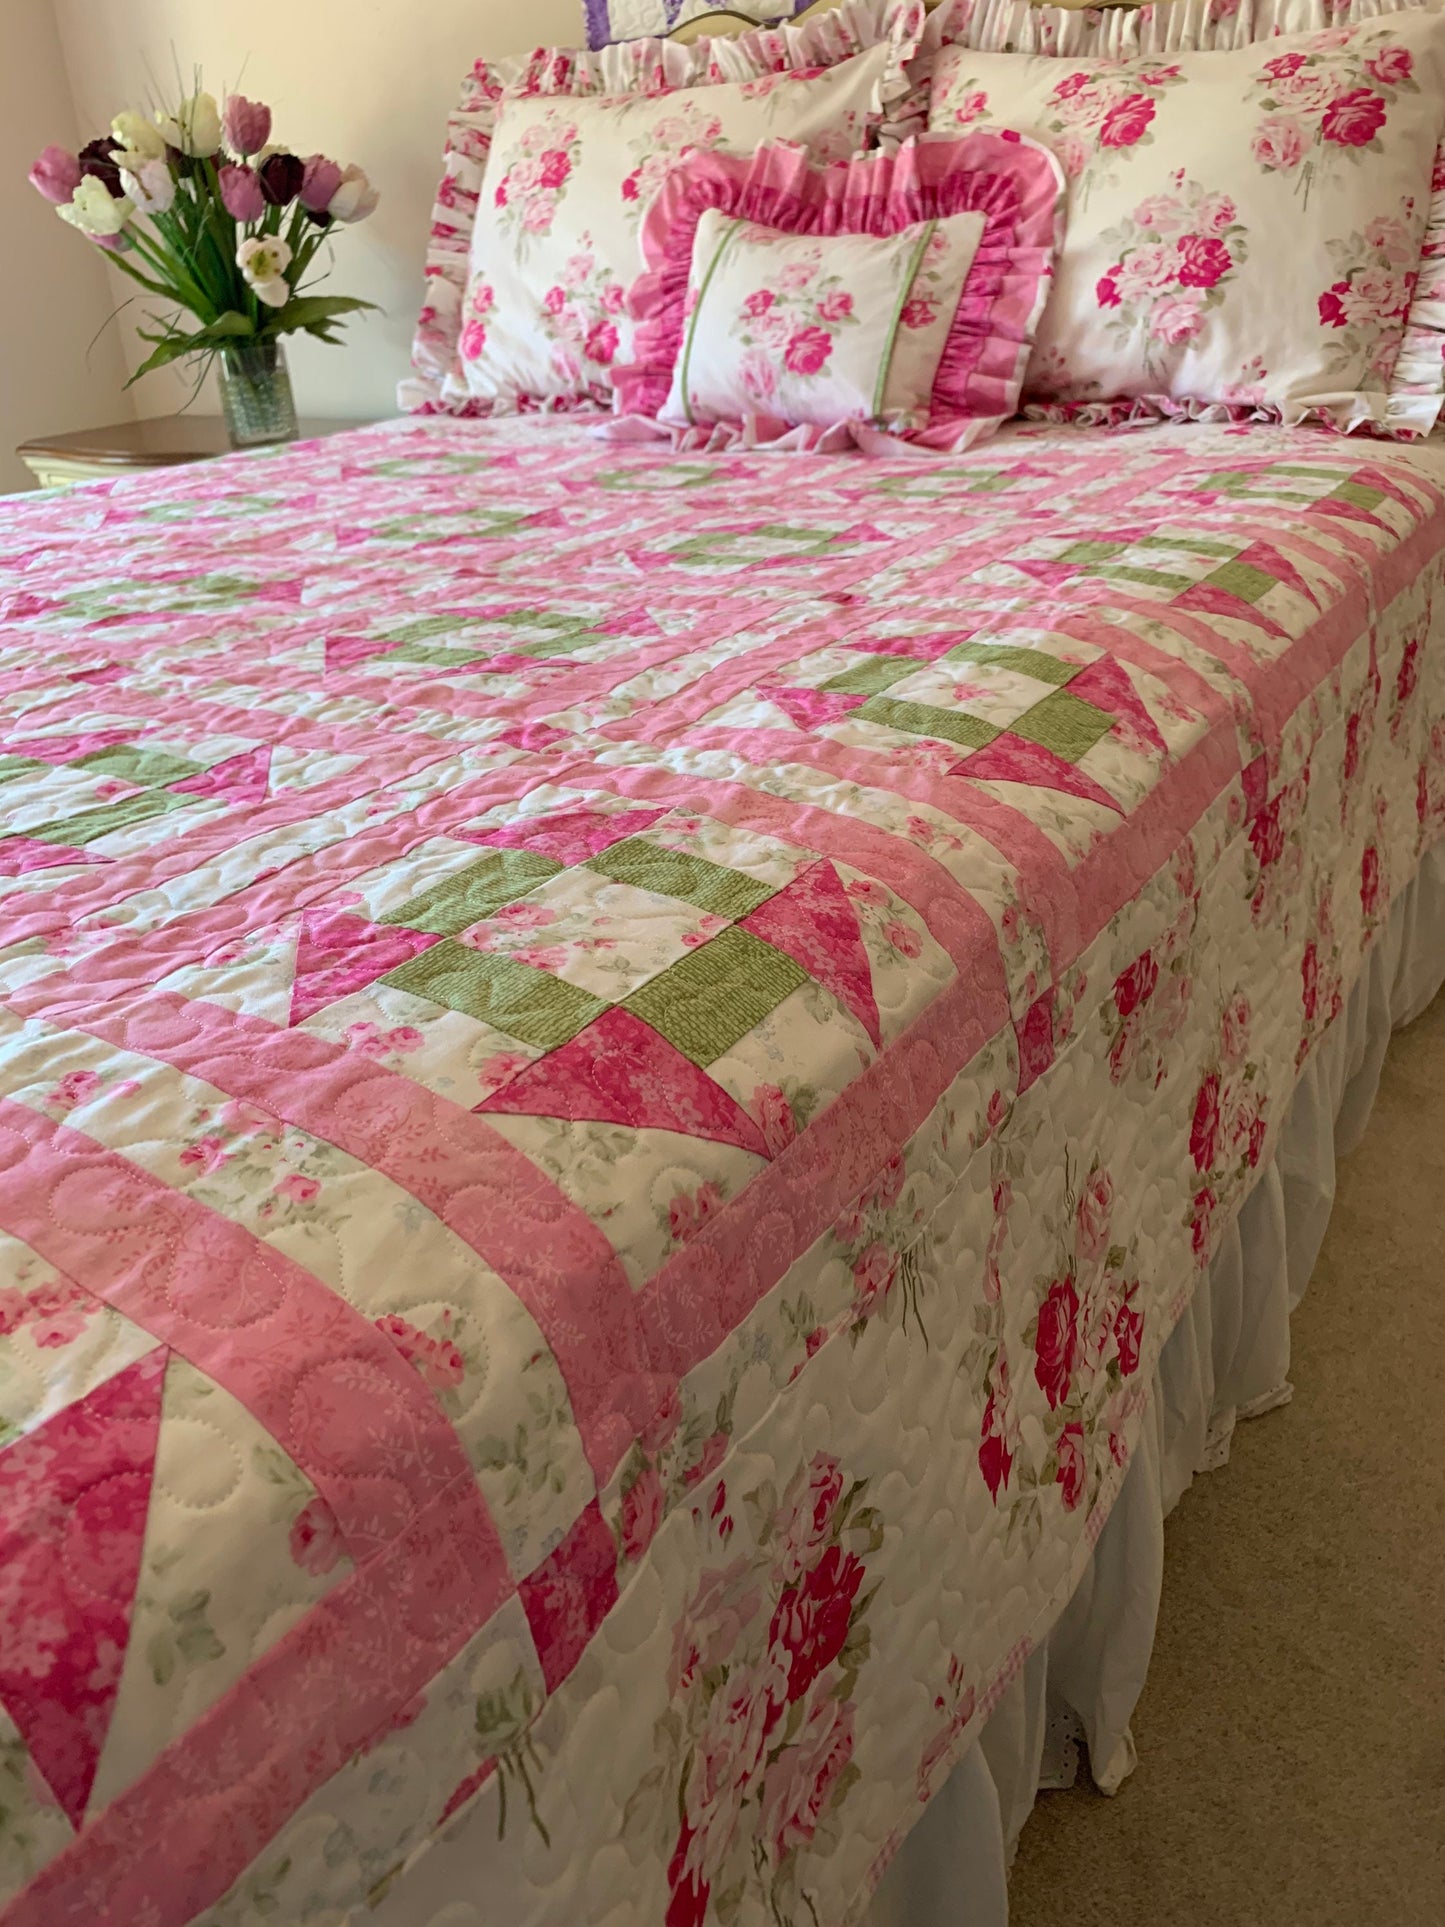 Queen Quilt, Shabby Chic, Rose, Pillow Sham Set, Pink, Handmade